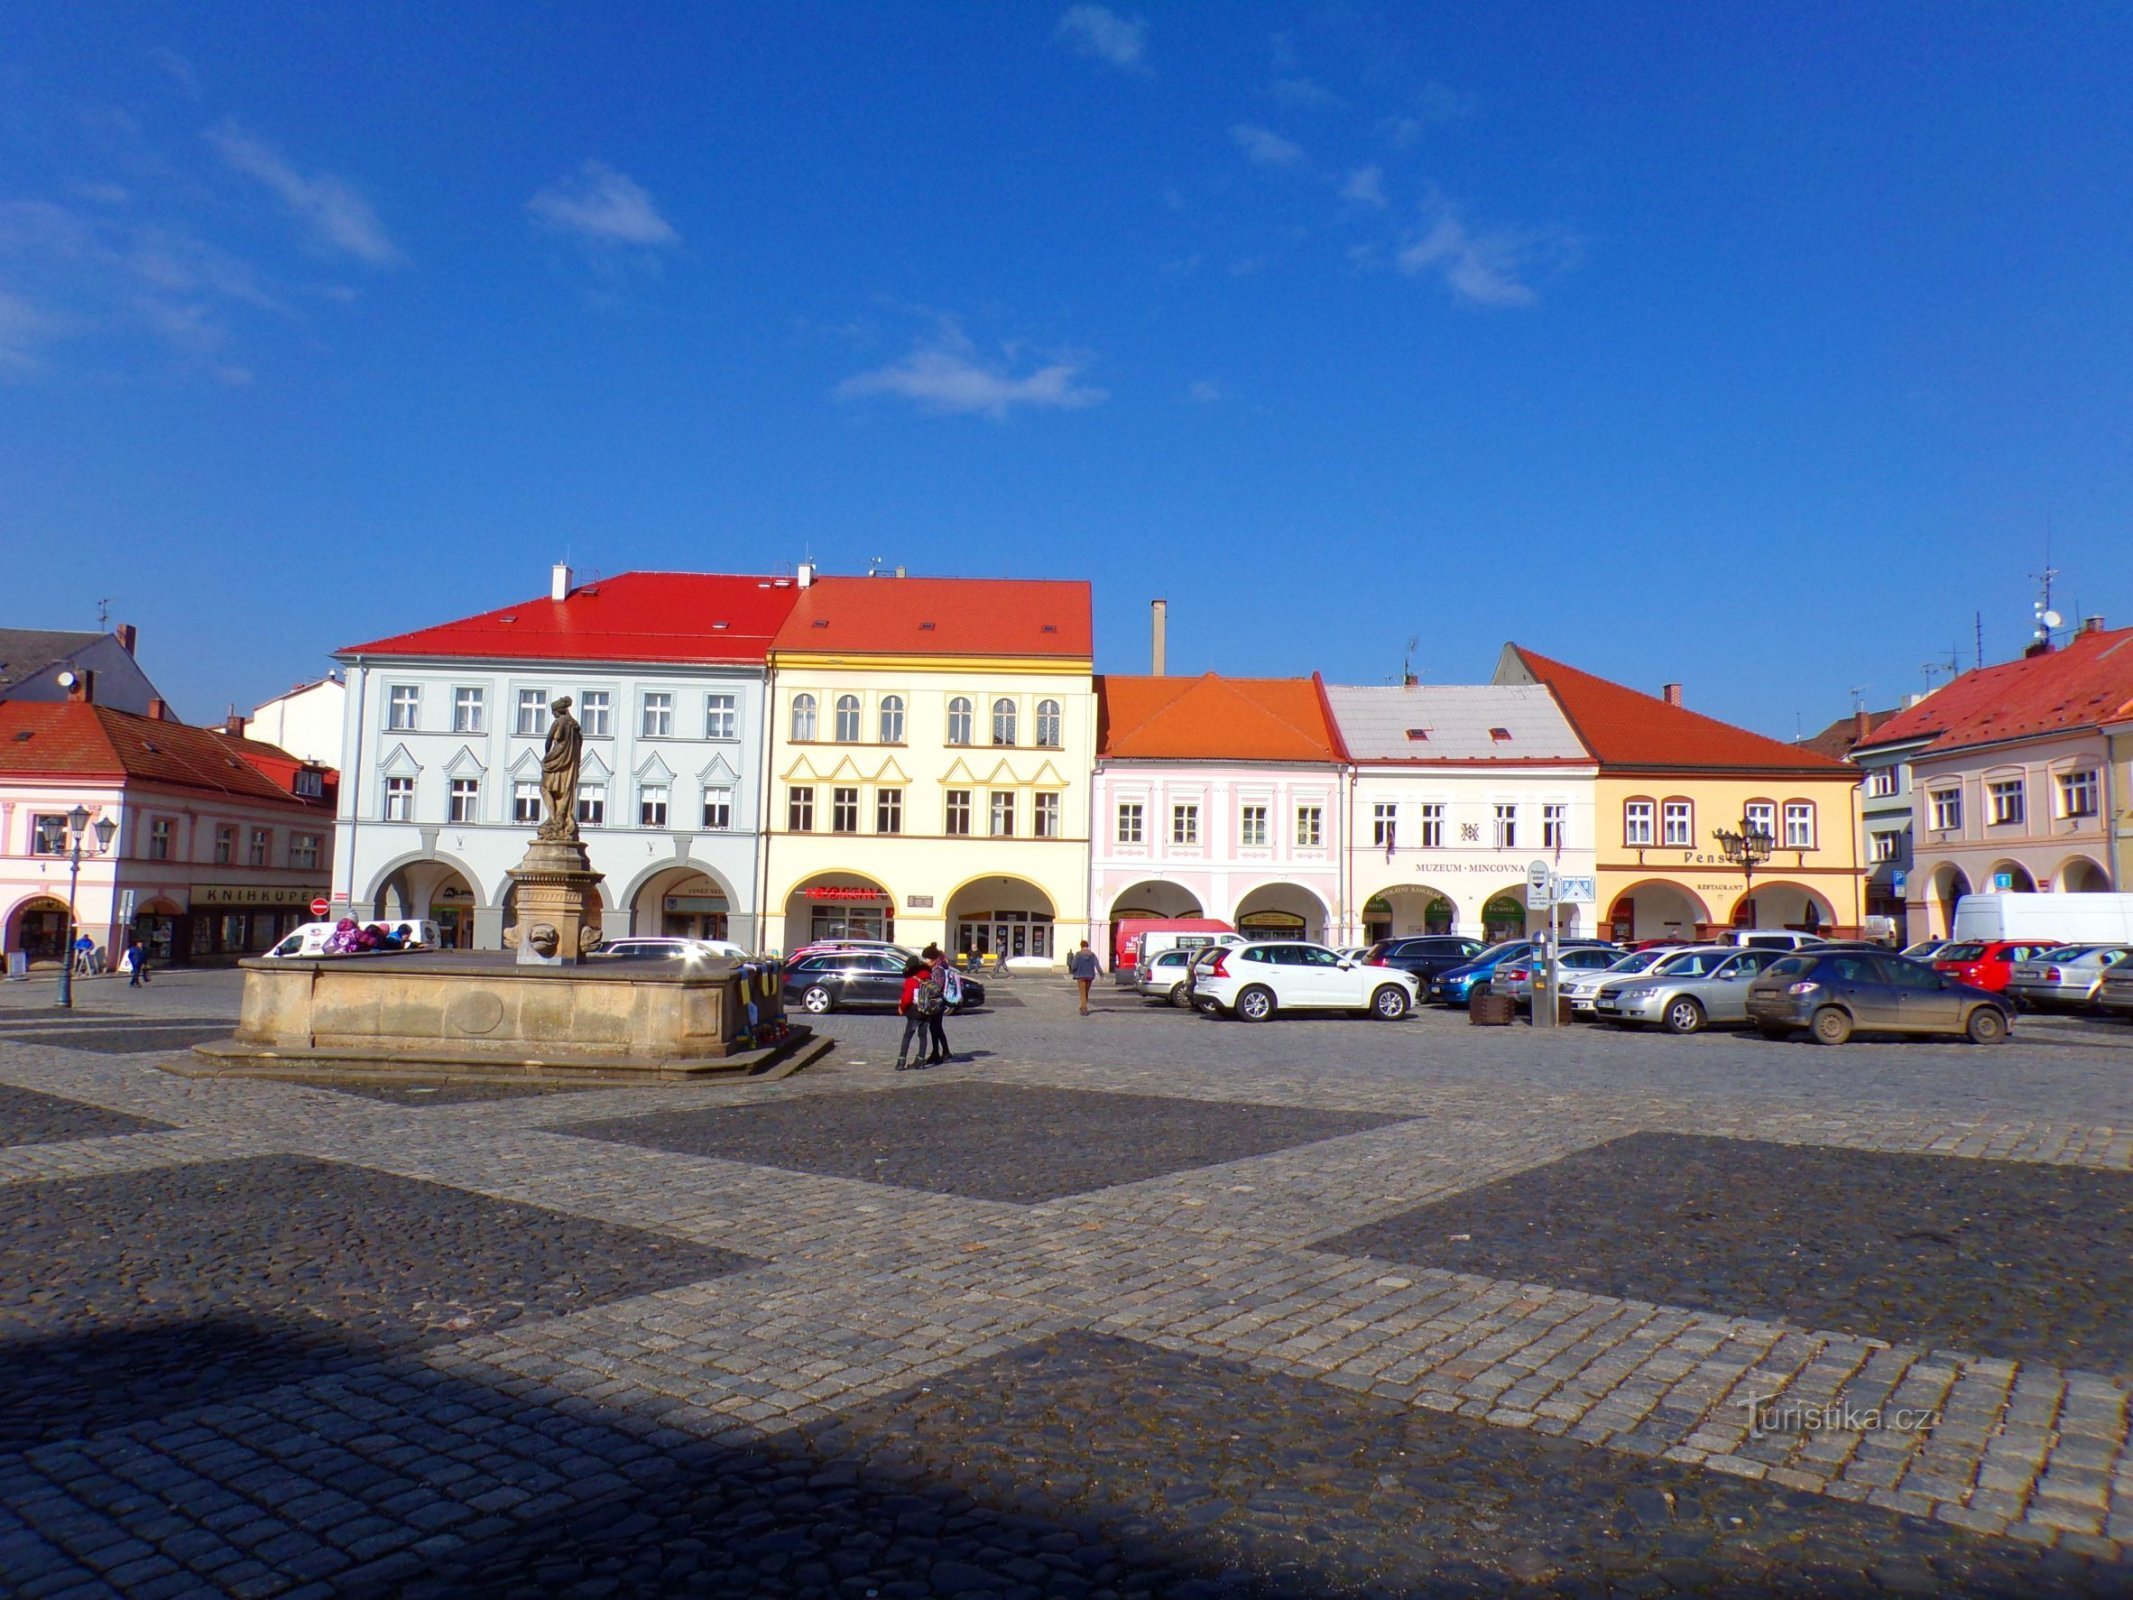 Palackého Nr. 73 bis Valdštejnovo náměstí Nr. 77 (Jičín, 3.3.2022)